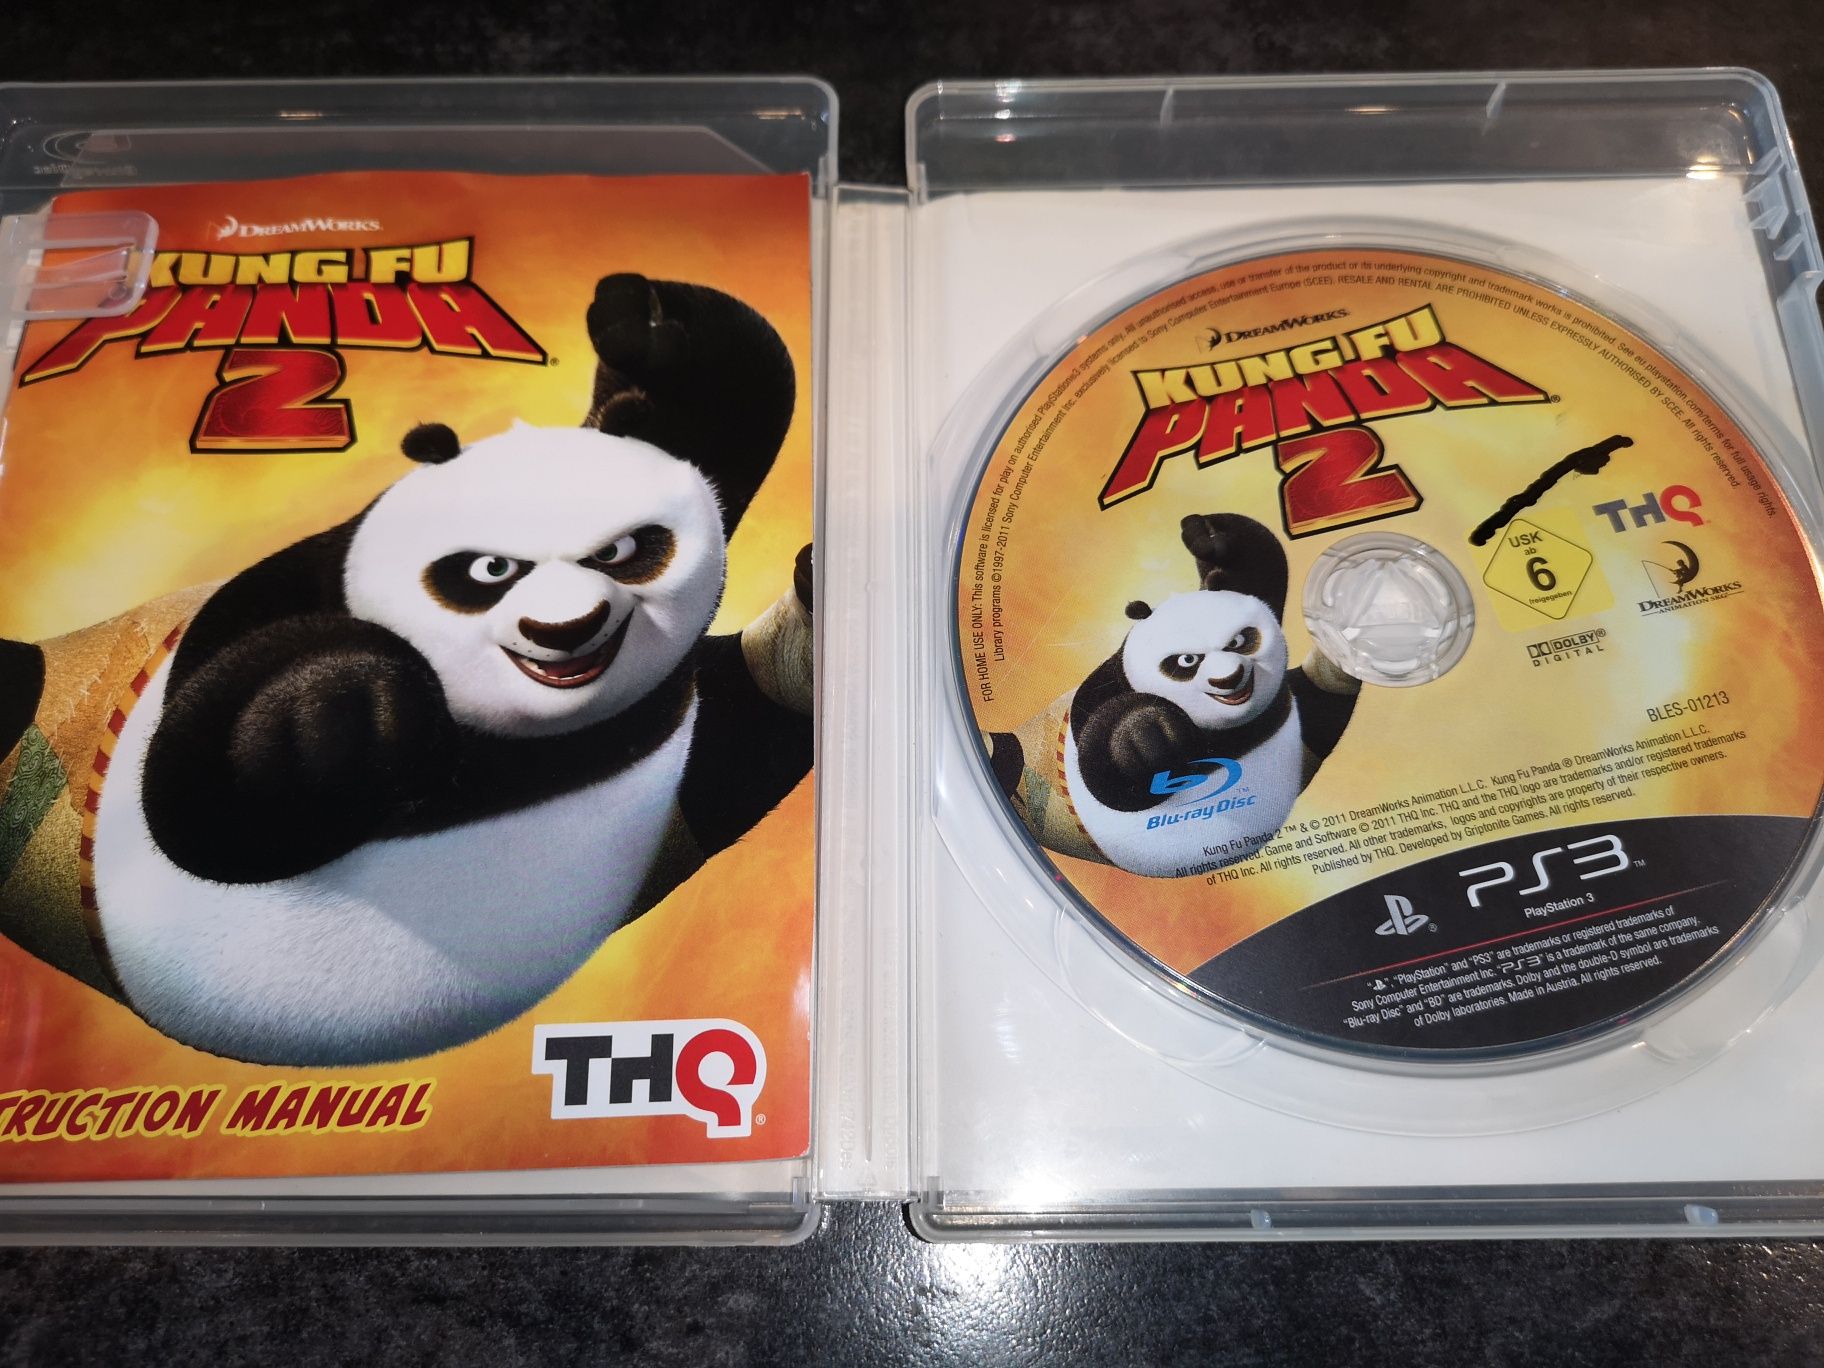 King Fu Panda 2 PS3 gra (możliwość wymiany) kioskzgrami Ursus